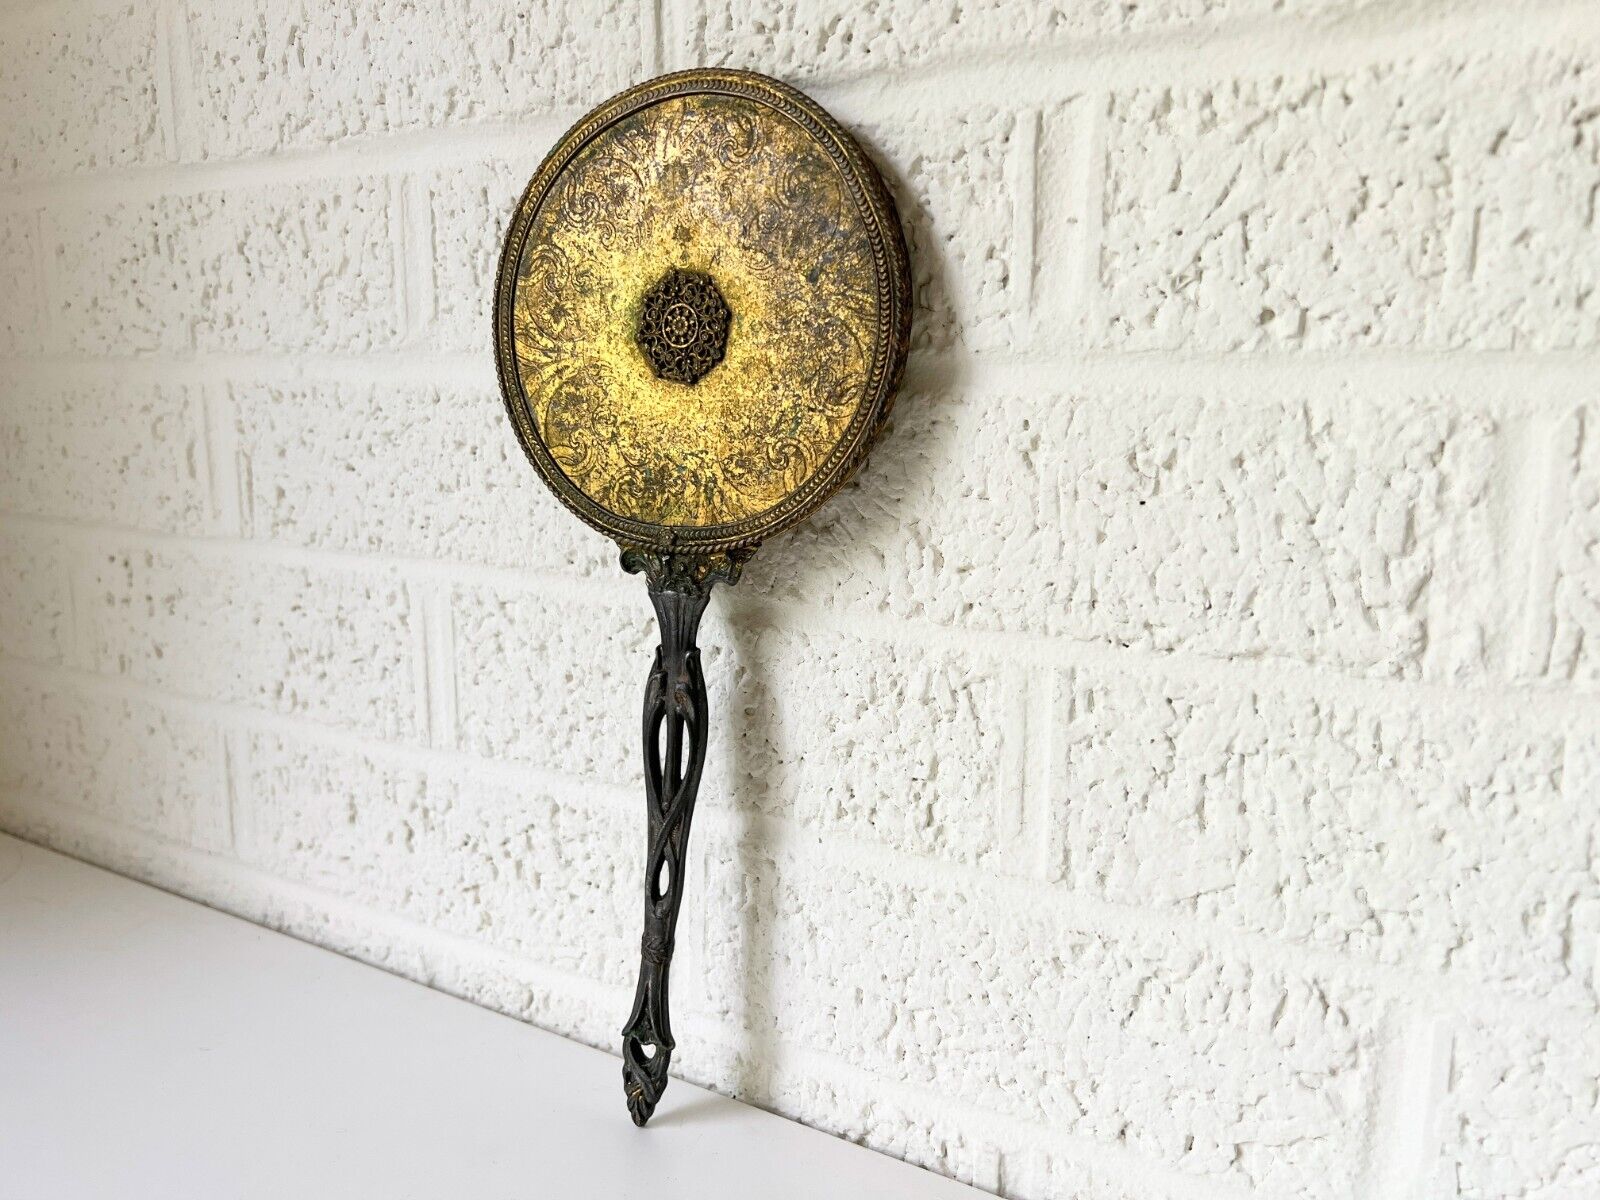 Vintage Brass Hand Mirror with Ornate Design